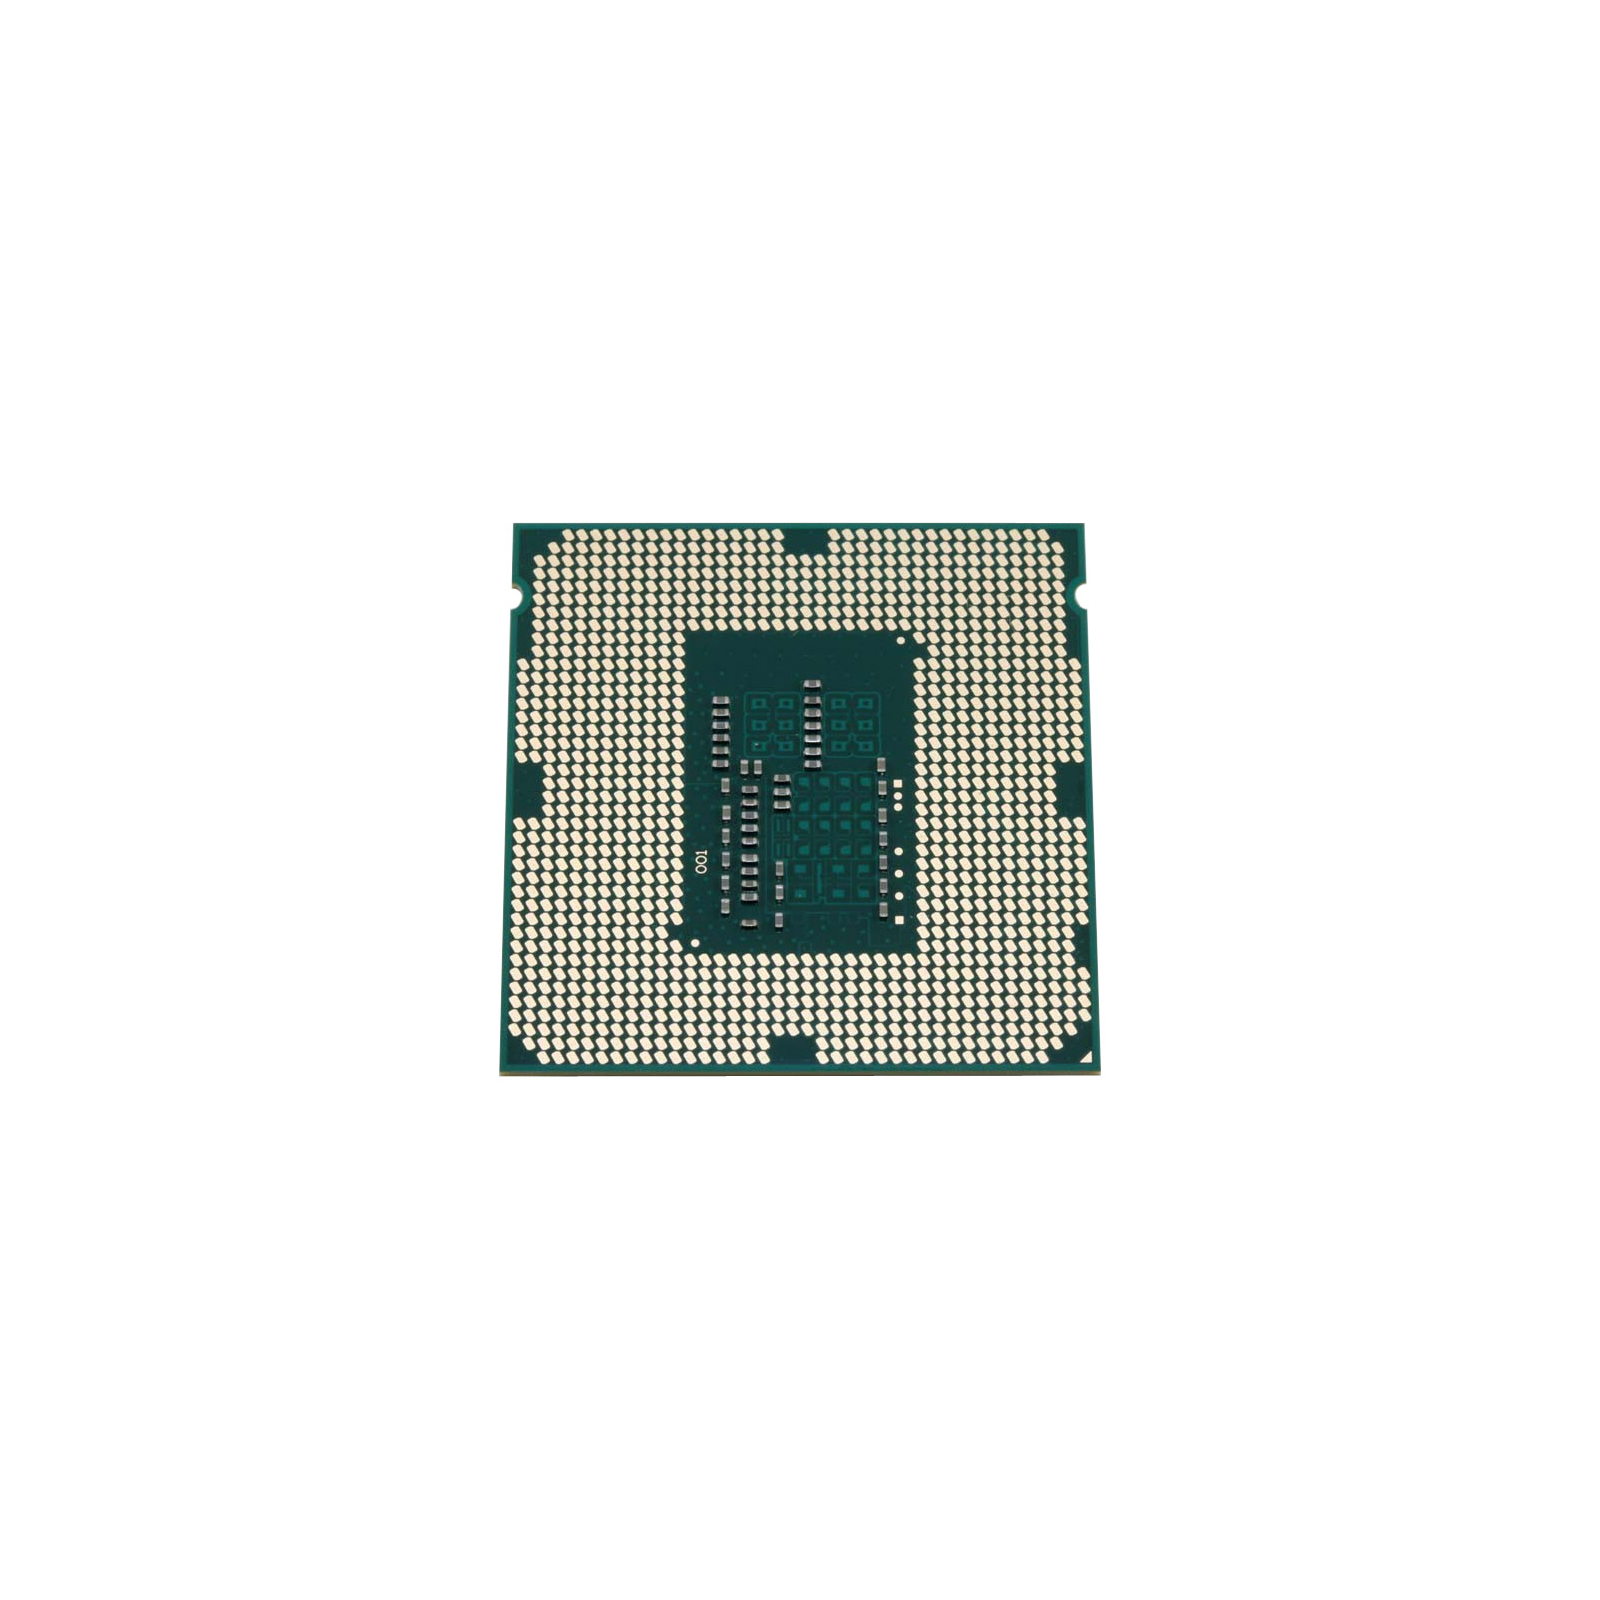 Процесор INTEL Celeron G1840 tray (CM8064601483439) зображення 2